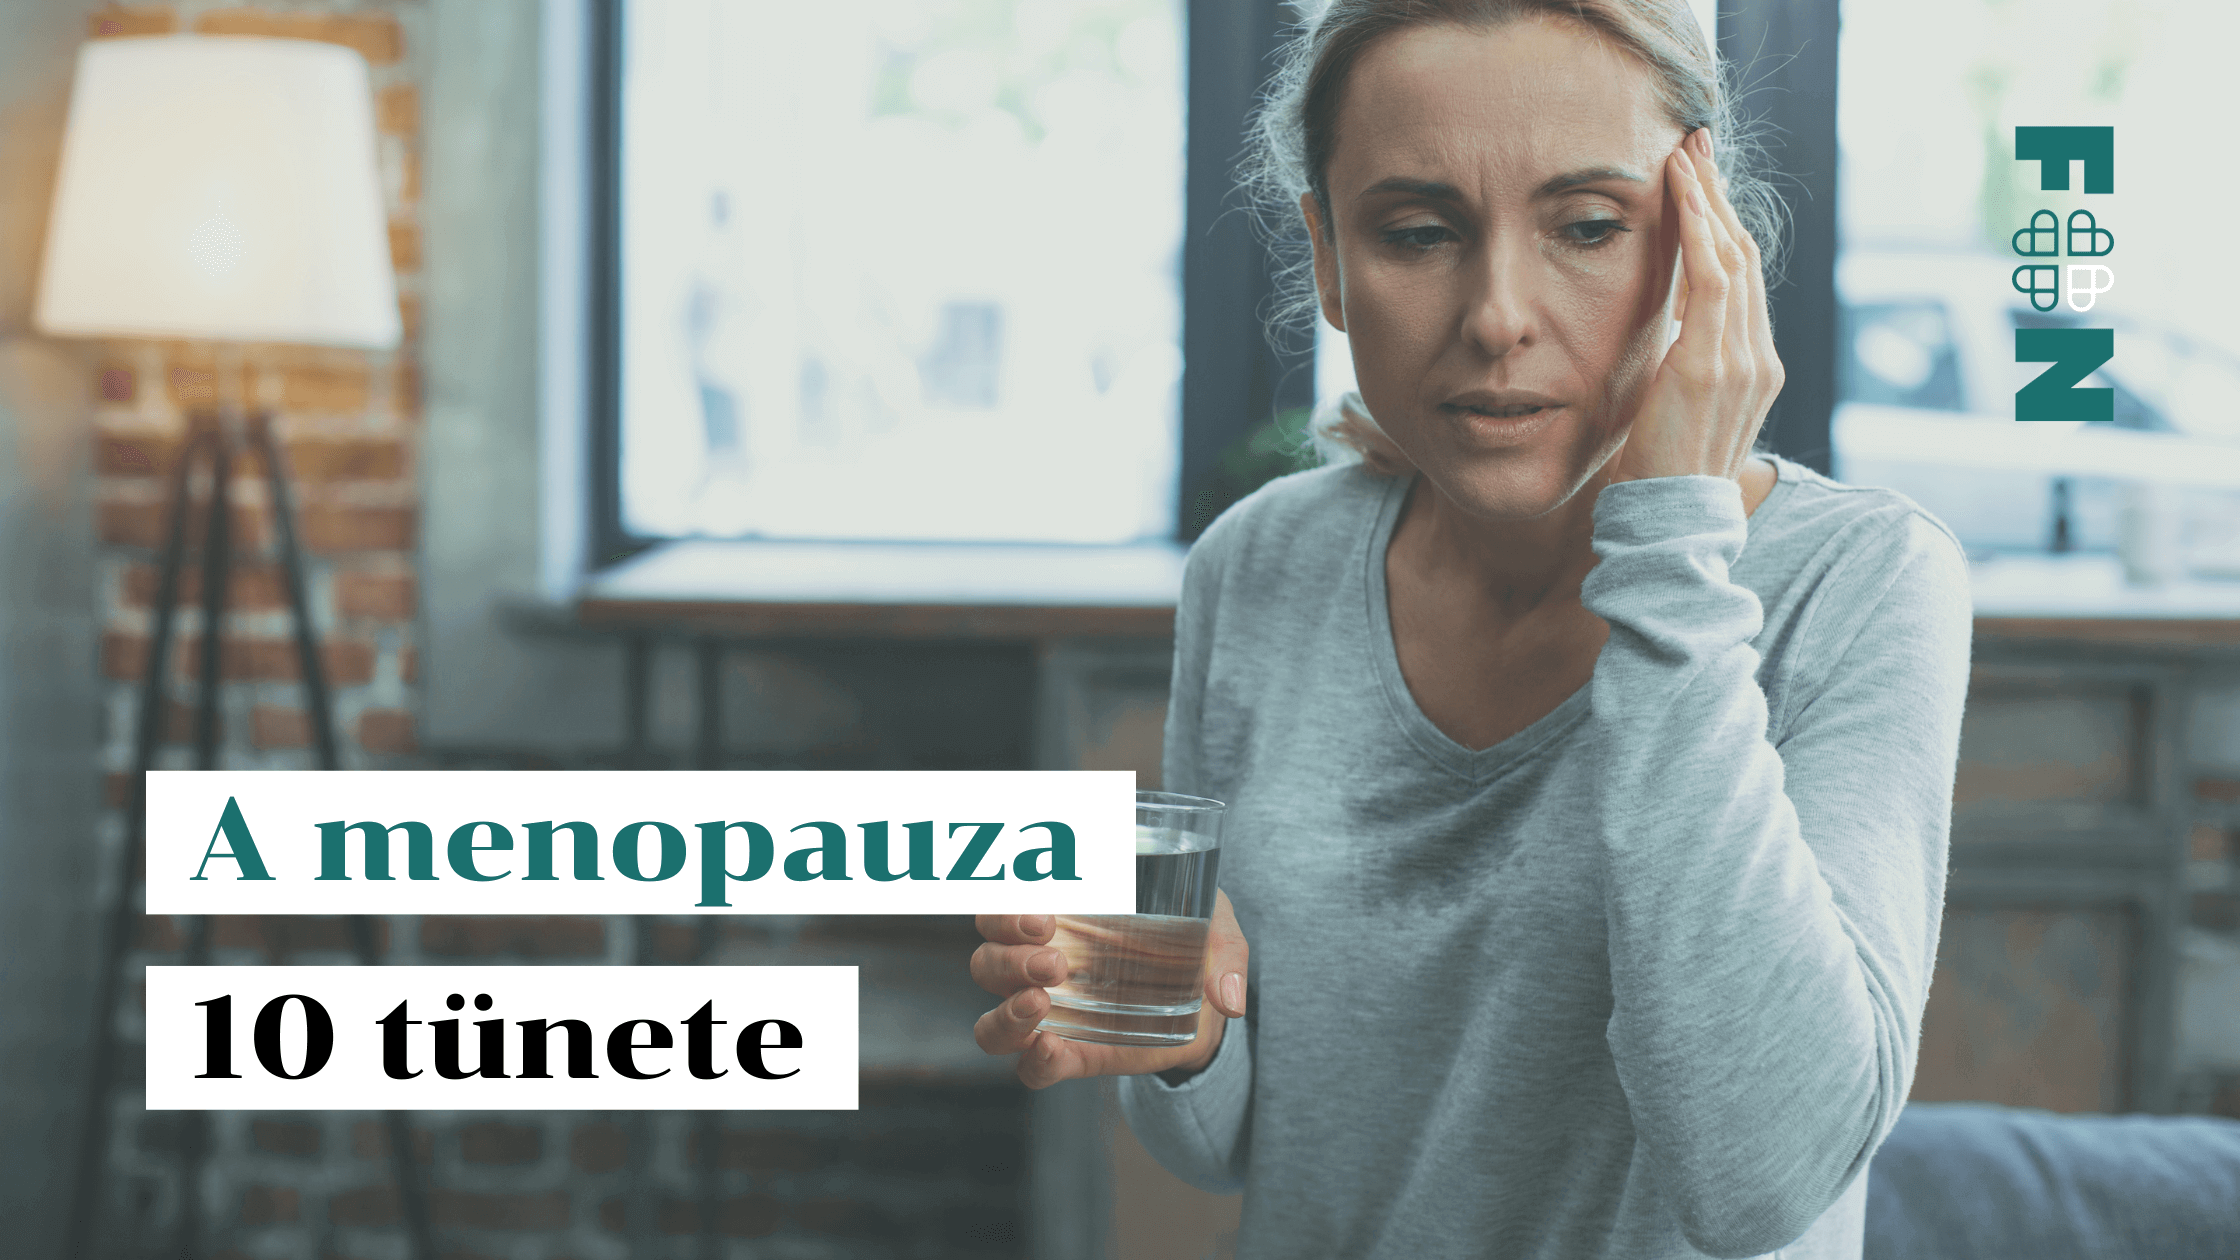 A menopauza 10 tünete - így ismerheted fel - Funkcionális Orvoslás